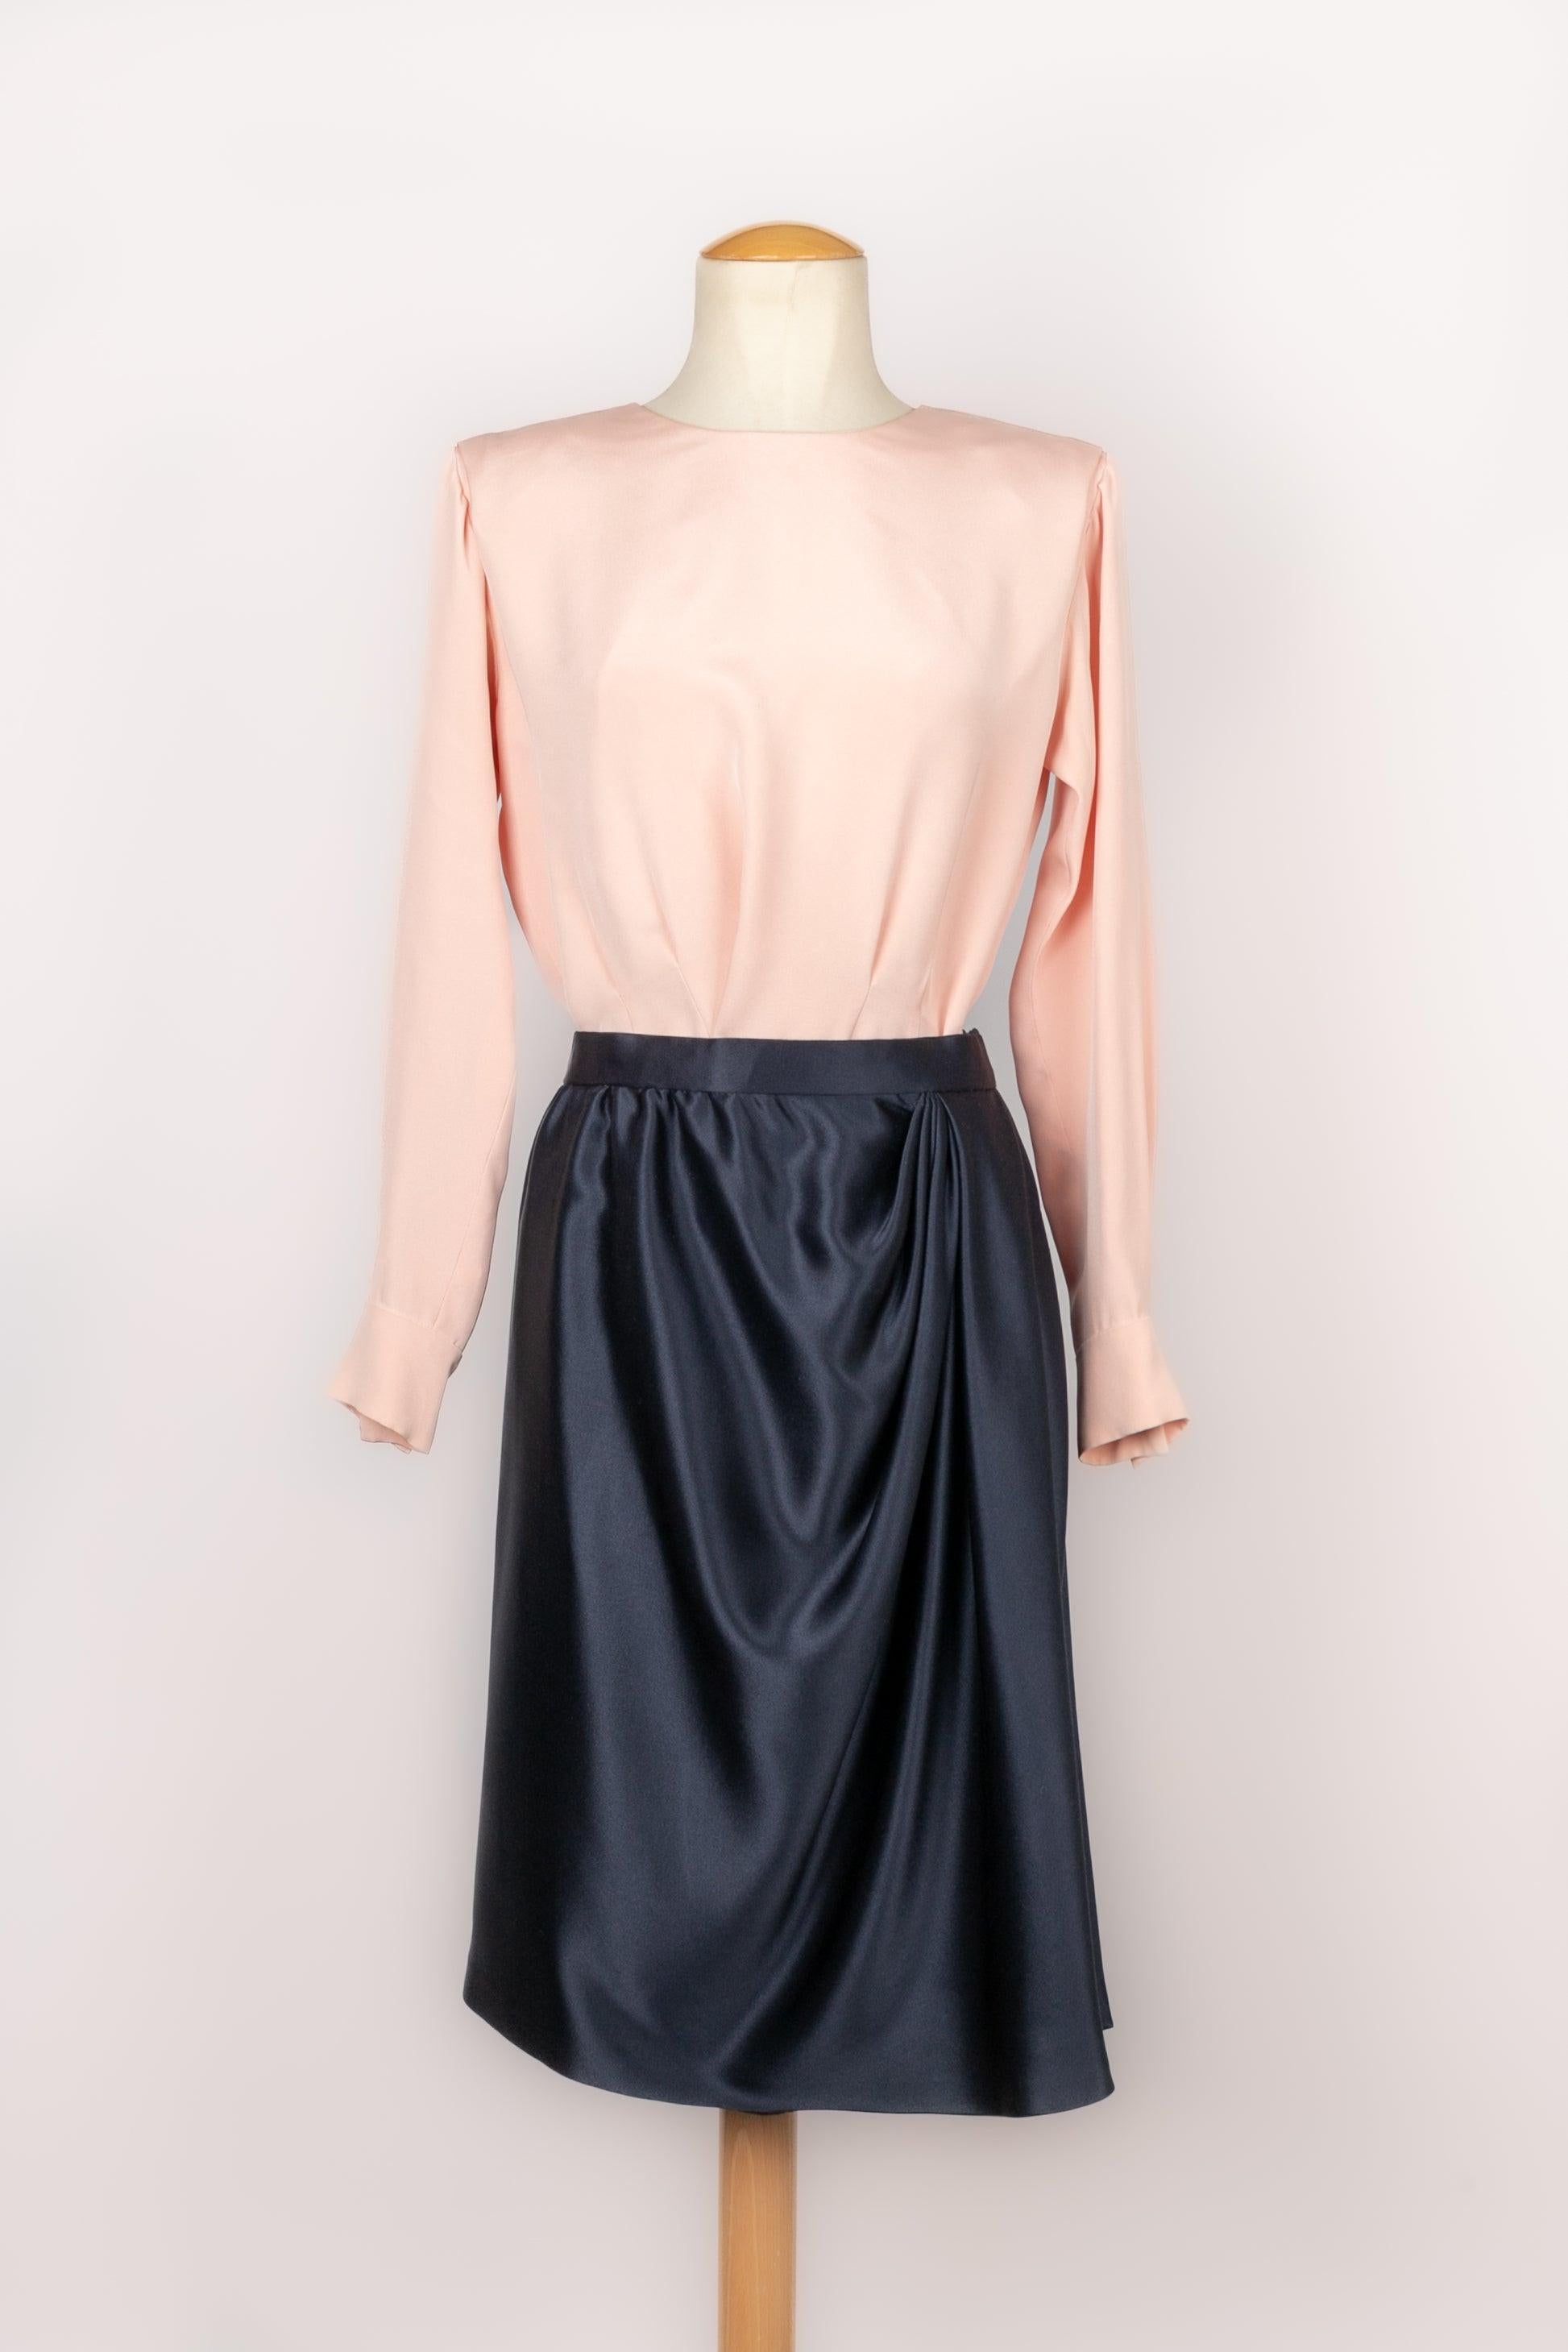 Yves Saint Laurent - (Fabriqué en France) Ensemble Haute Couture composé d'une veste, d'une jupe, d'une ceinture et d'un top à manches longues. Aucune taille n'est indiquée, il convient à un 34FR/36FR. Pour être mentionnés, quelques fils sont